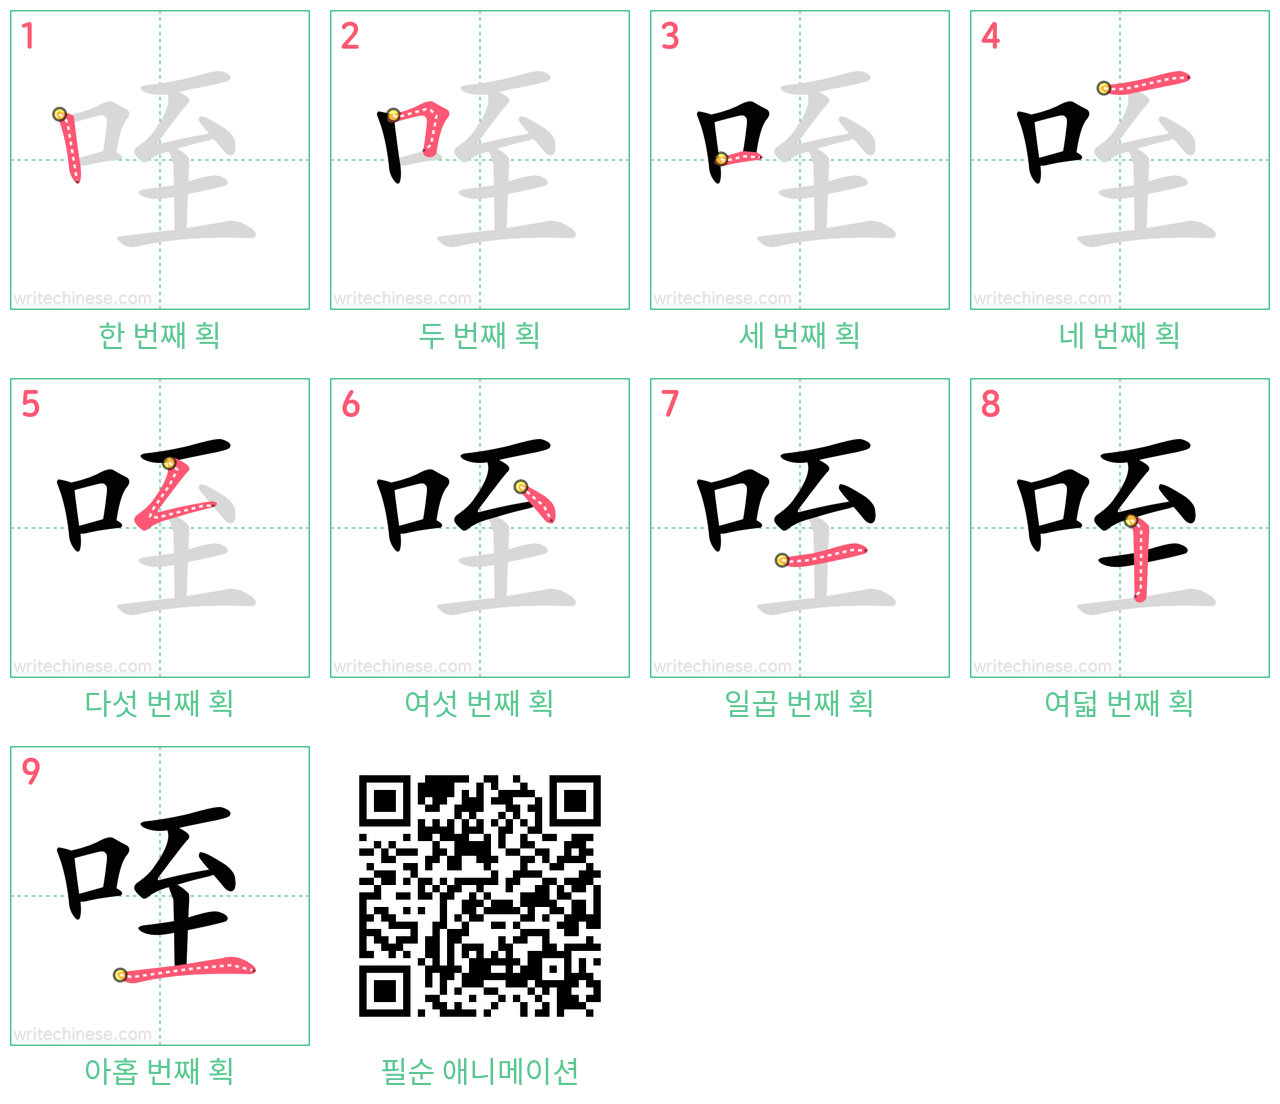 咥 step-by-step stroke order diagrams